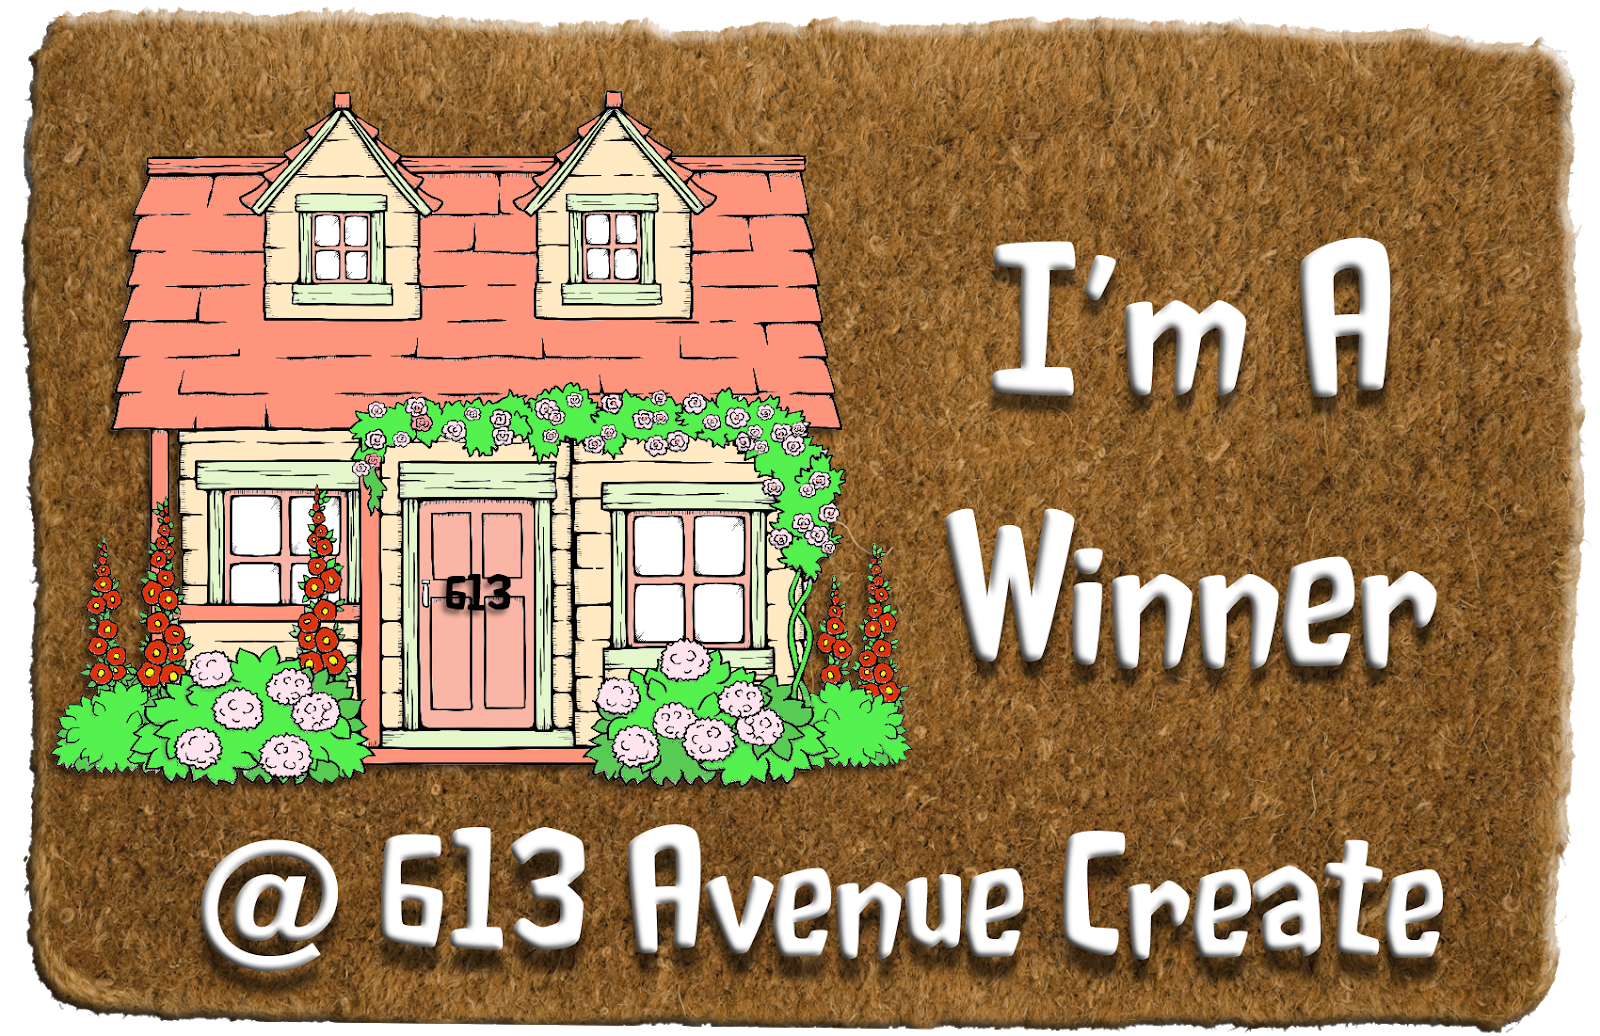 I won at 613 Avenue Create!